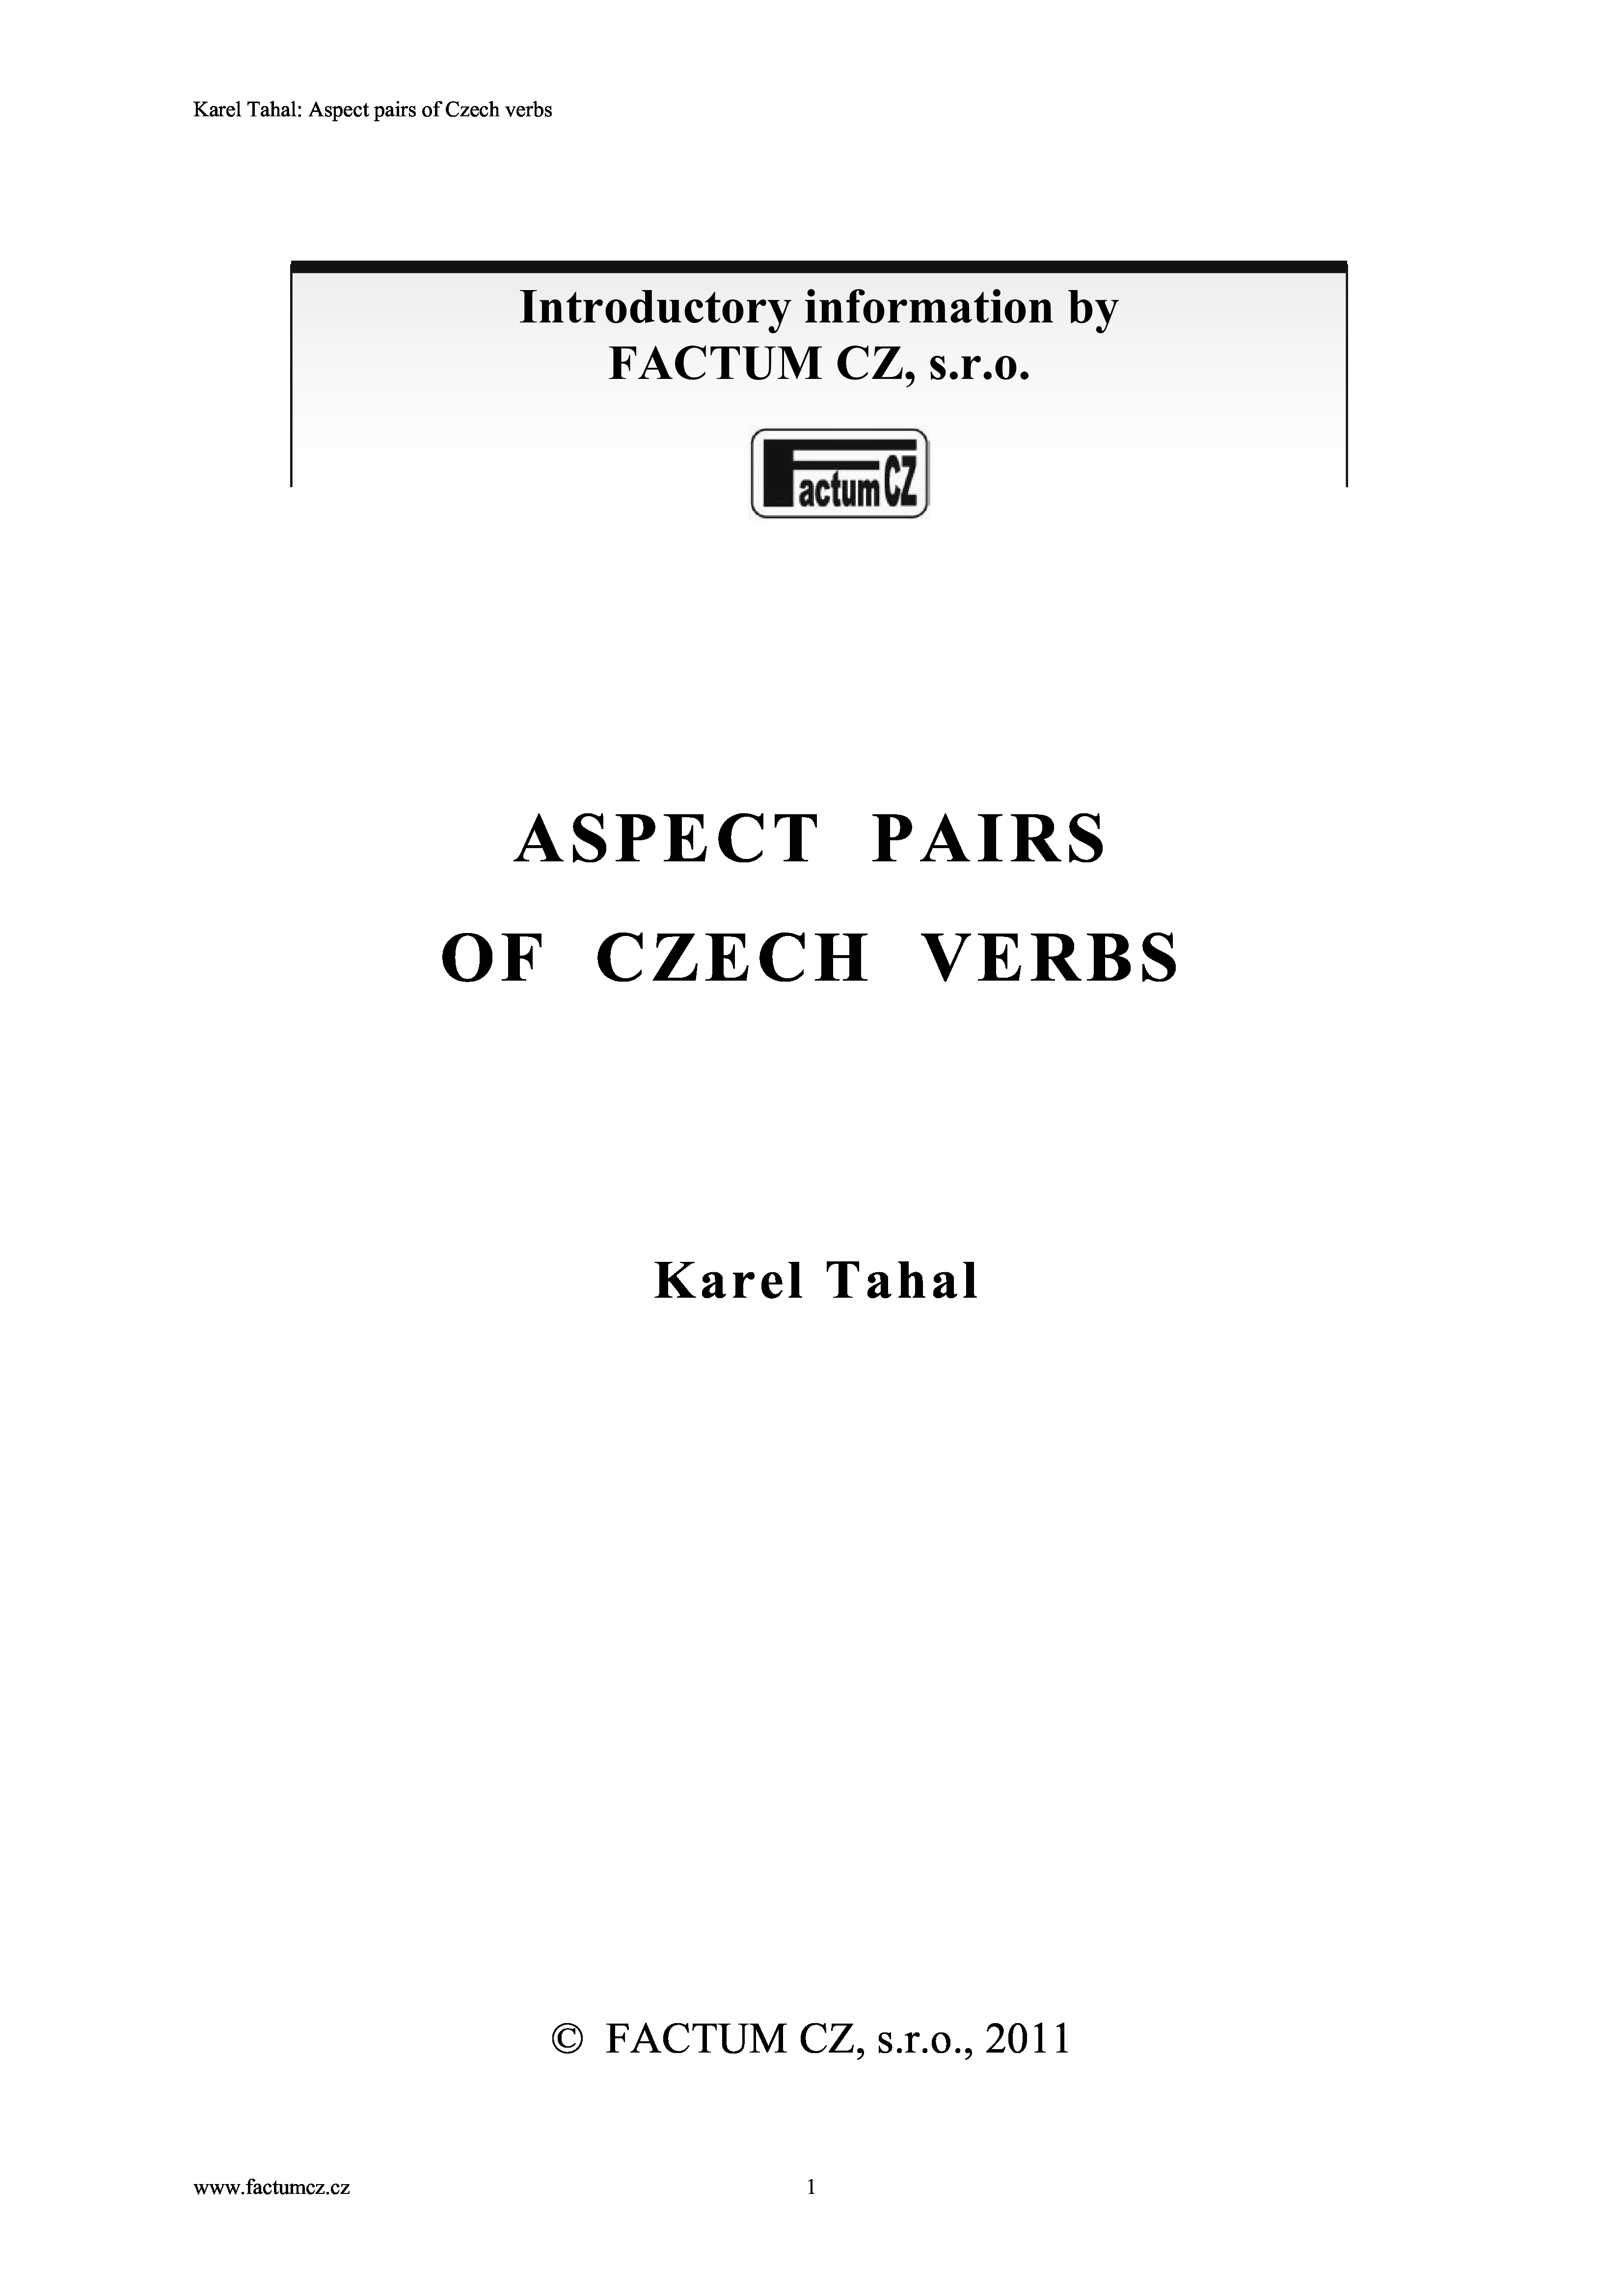 Aspect pairs of Czech verbs